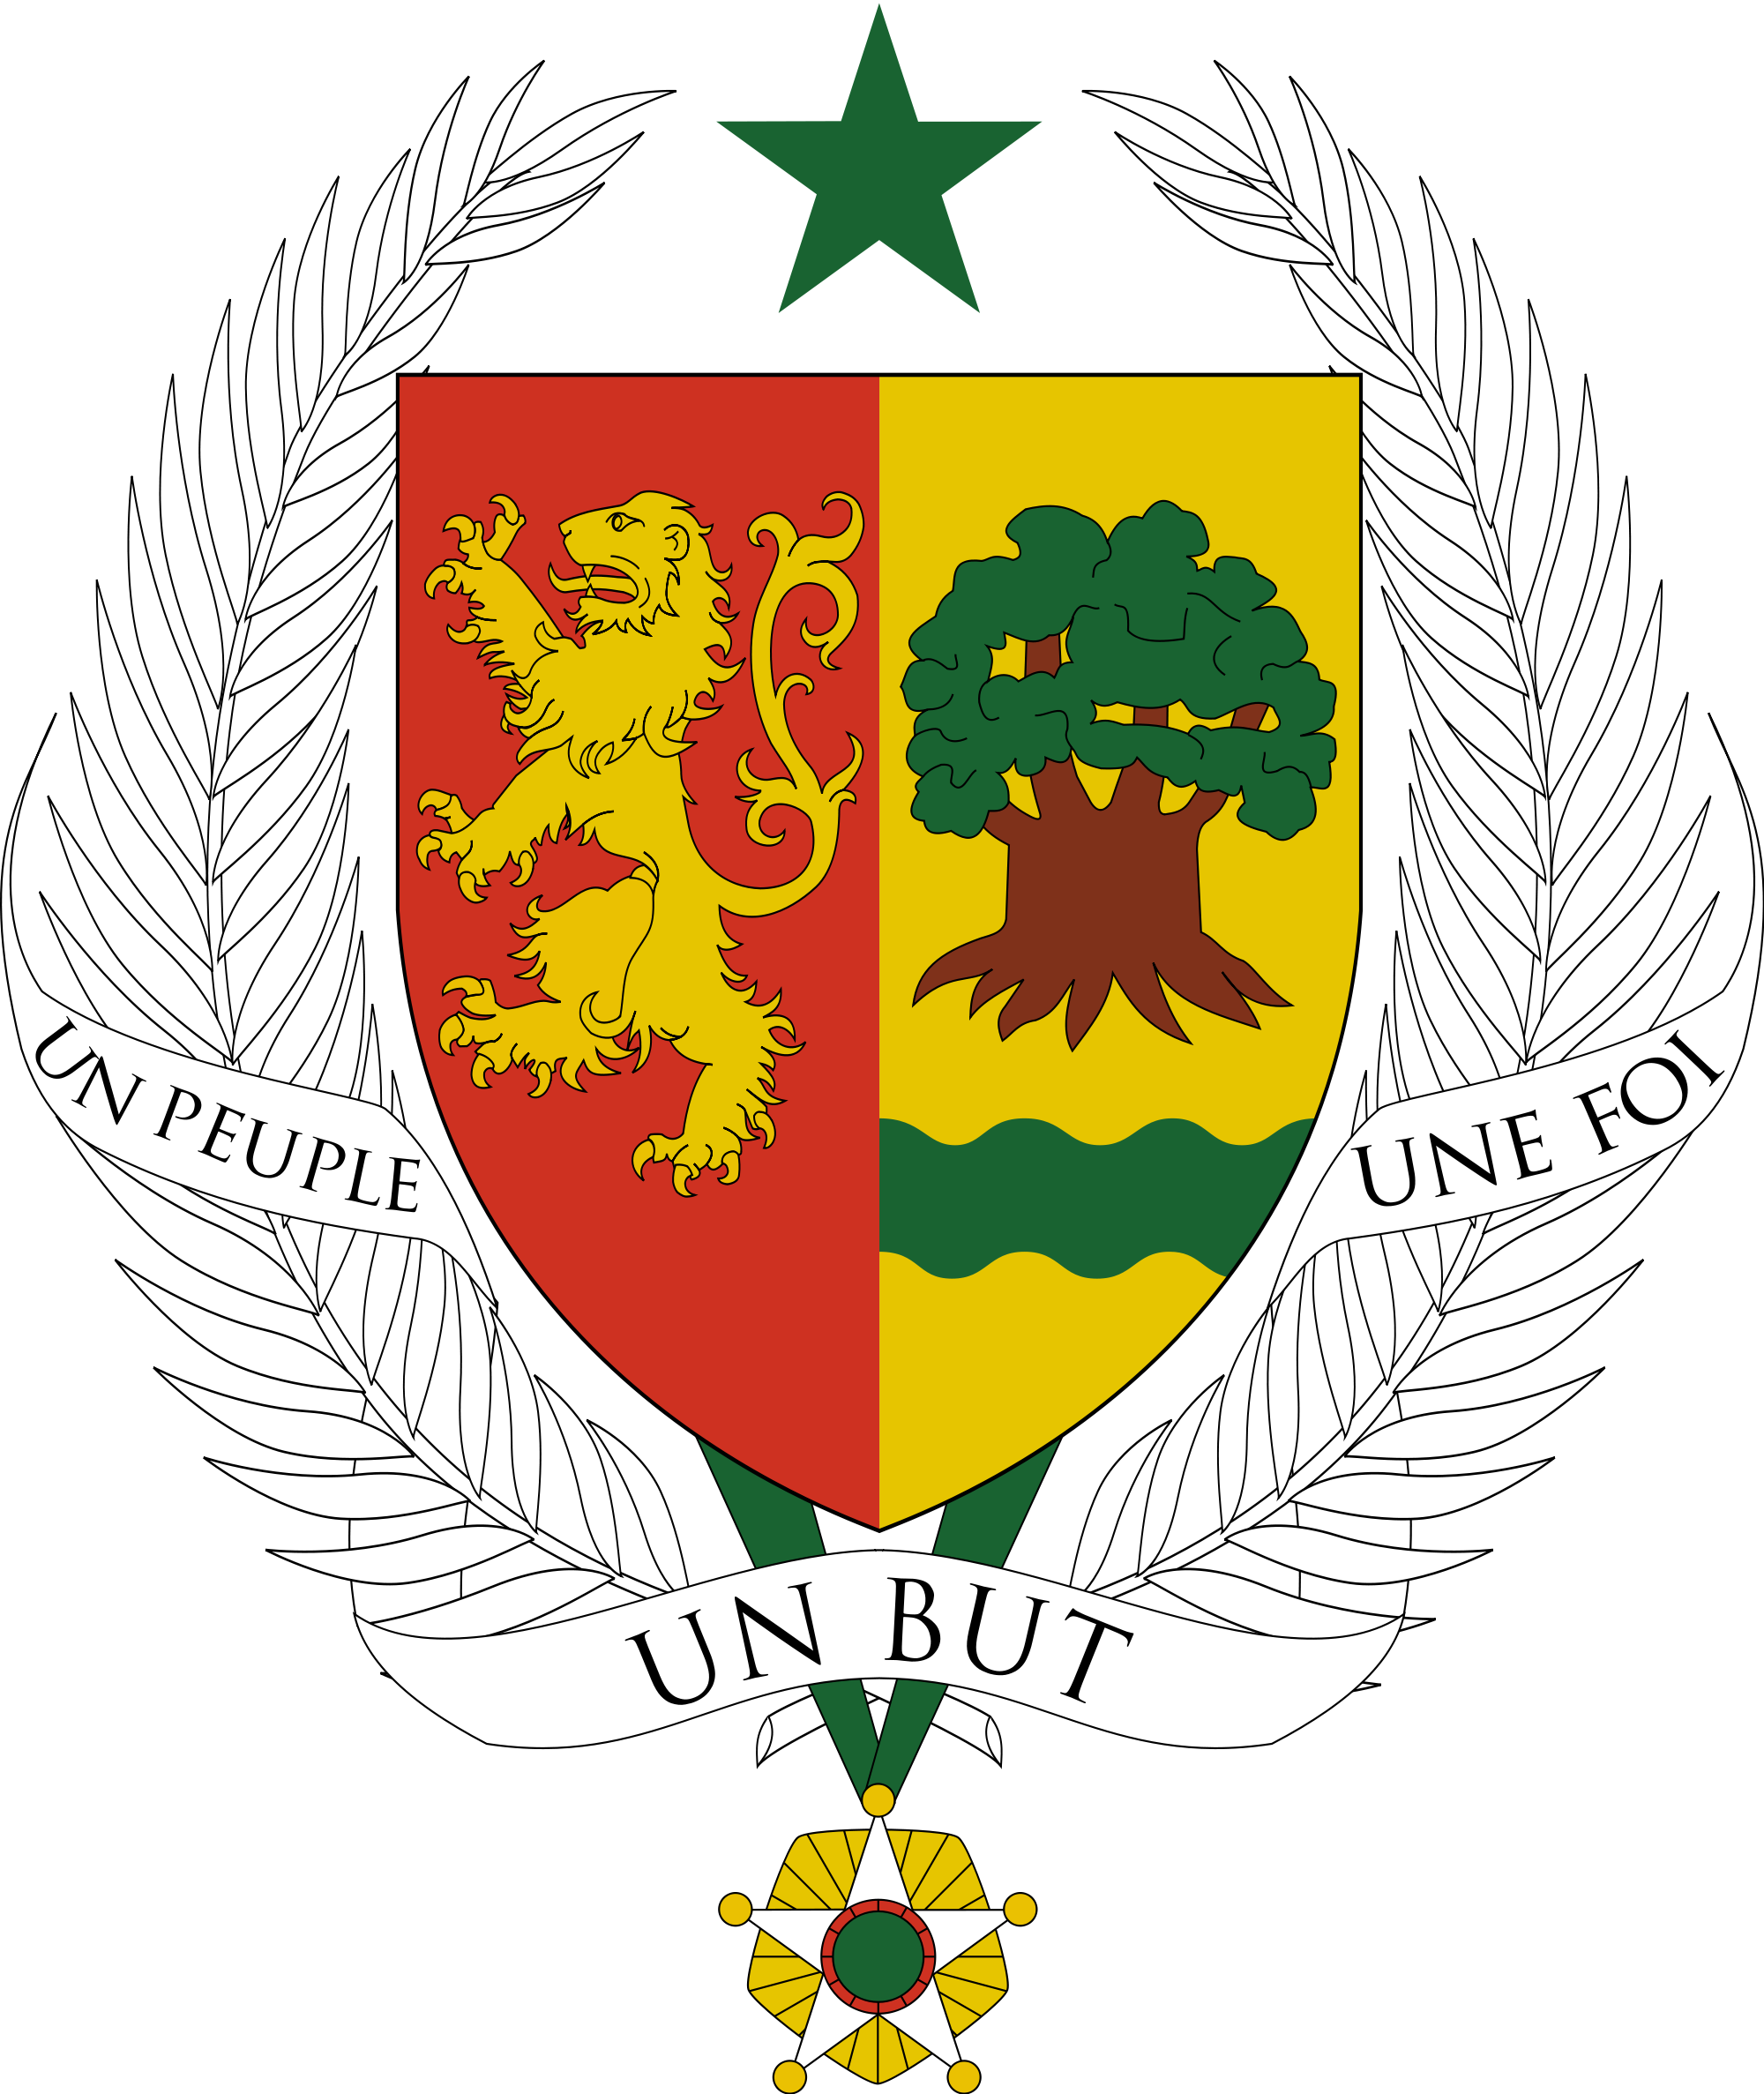 Emblem of Senegal